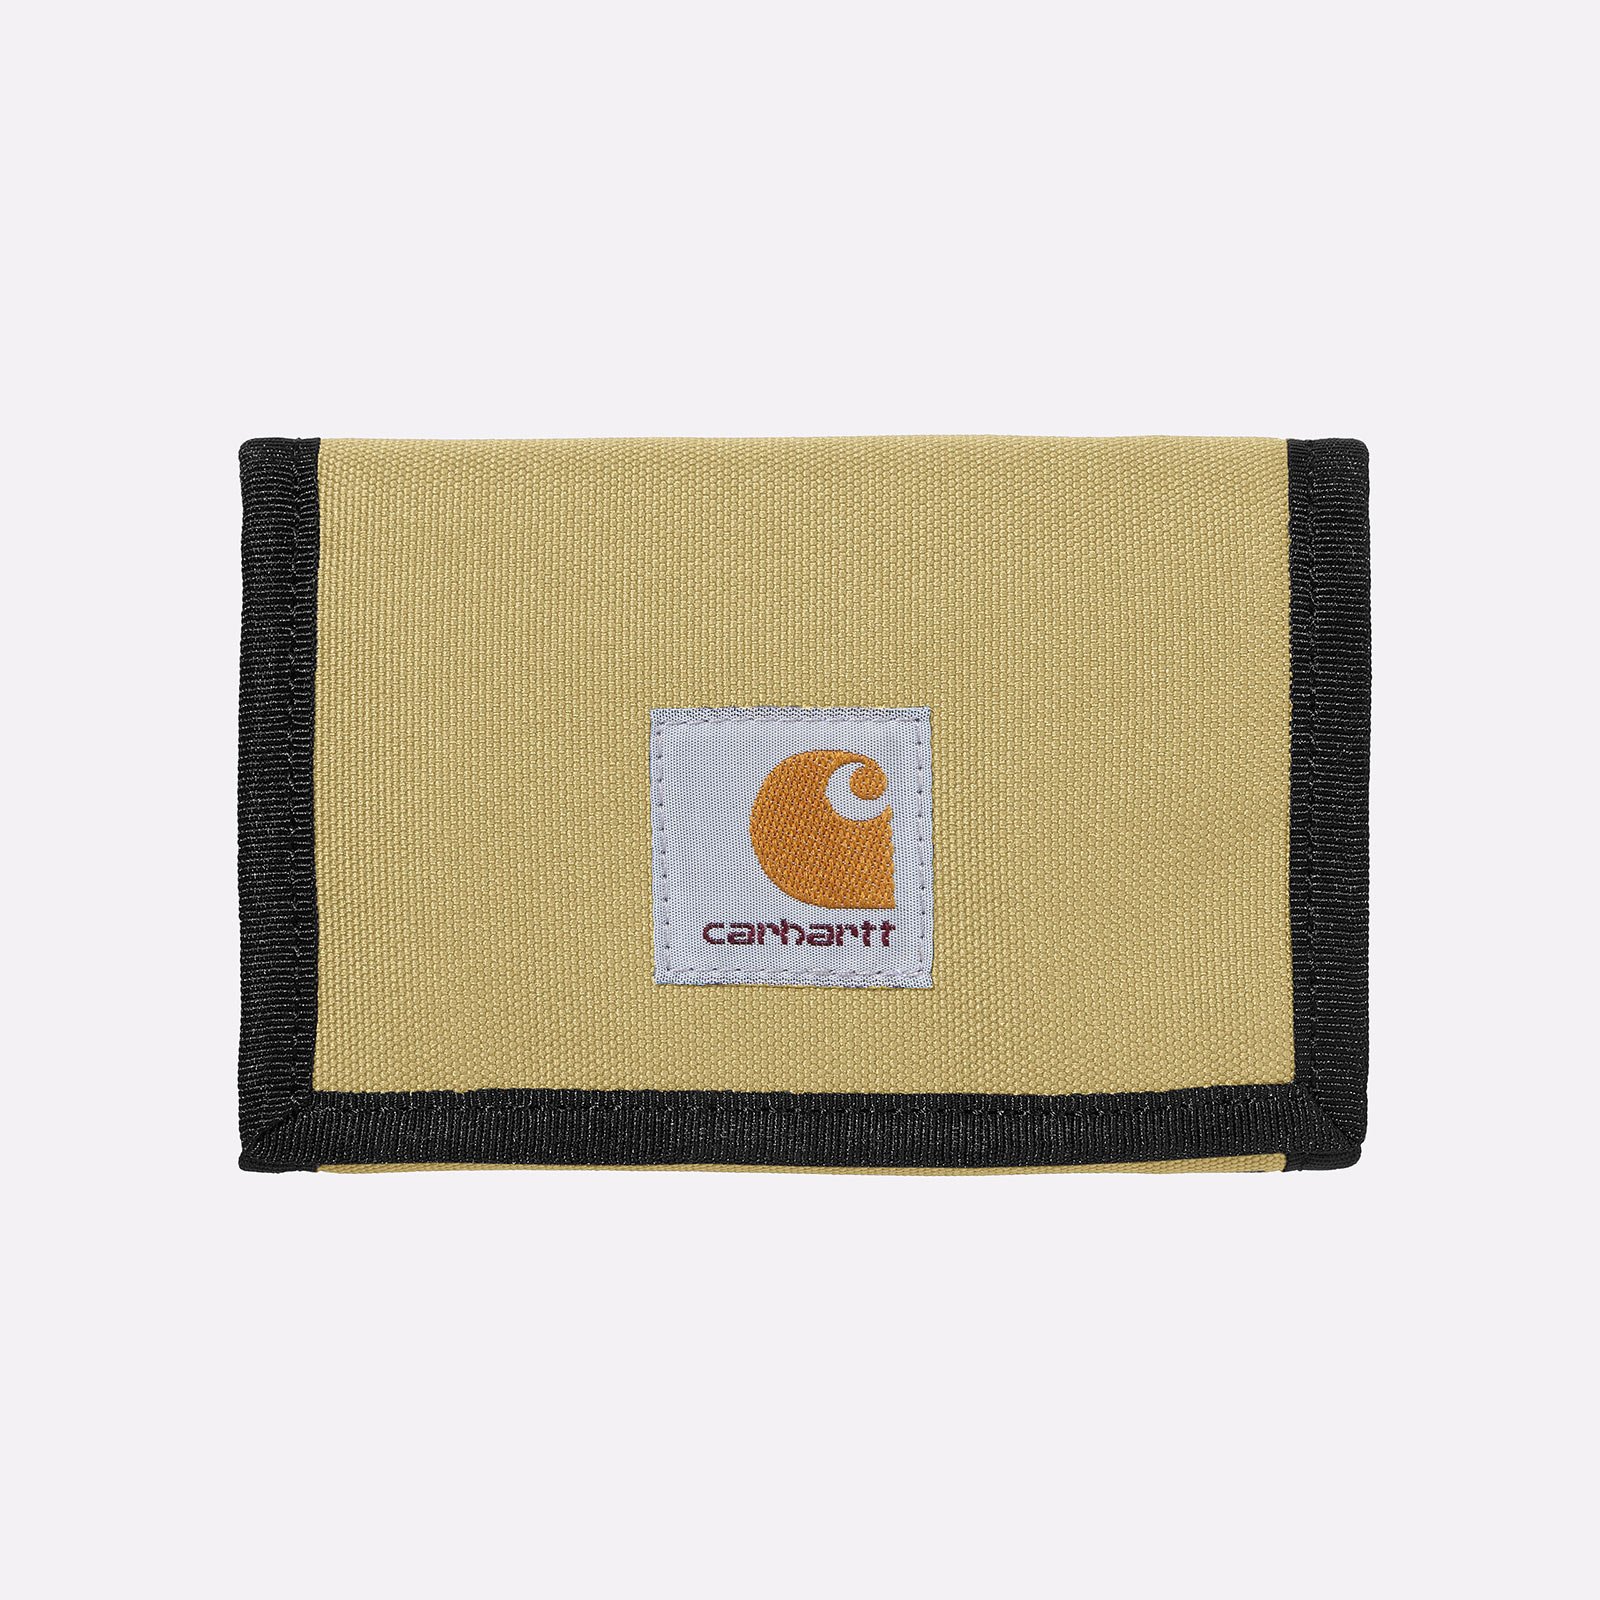  бежевый бумажник Carhartt WIP Alec Wallet I031471-agate - цена, описание, фото 1